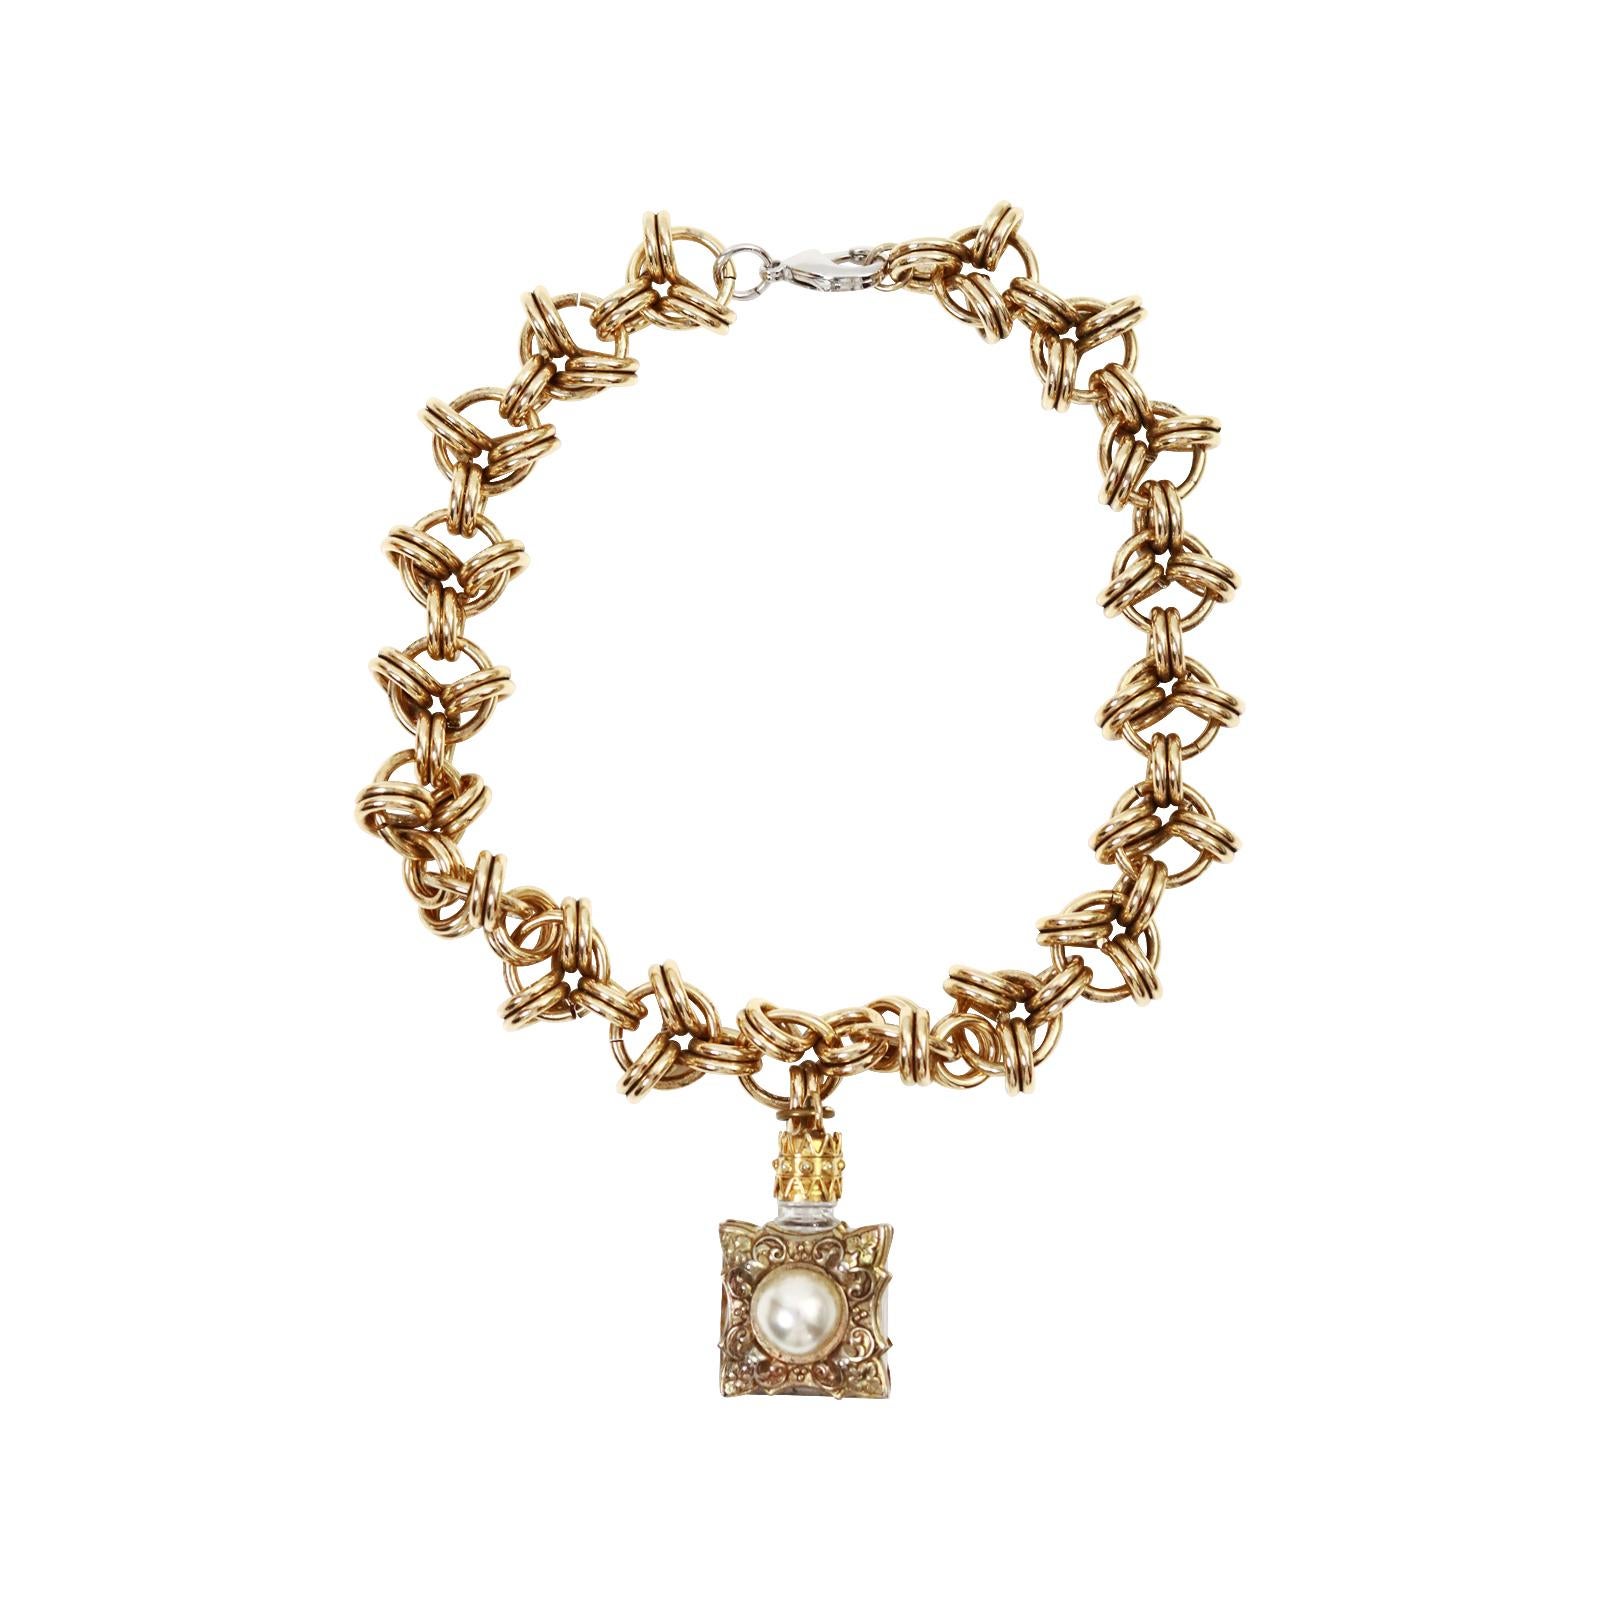 Vintage Made in France Gold Tone Flasche Halskette CIRCA 1980er Jahre. Diese fabelhafte Halskette erinnert mich in jeder Hinsicht an Chanel. Es ist eine sehr schwere dicken Gold-Ton-Kette, die eine Glasflasche, die in Frankreich gemacht markiert ist